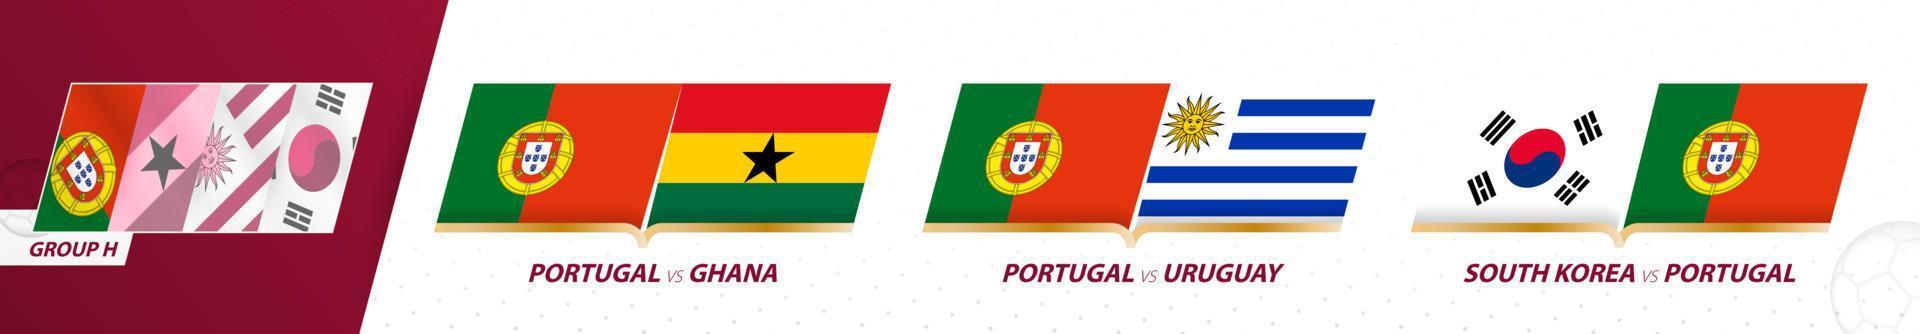 jogos da seleção de futebol de portugal no grupo h do torneio internacional de futebol 2022. vetor